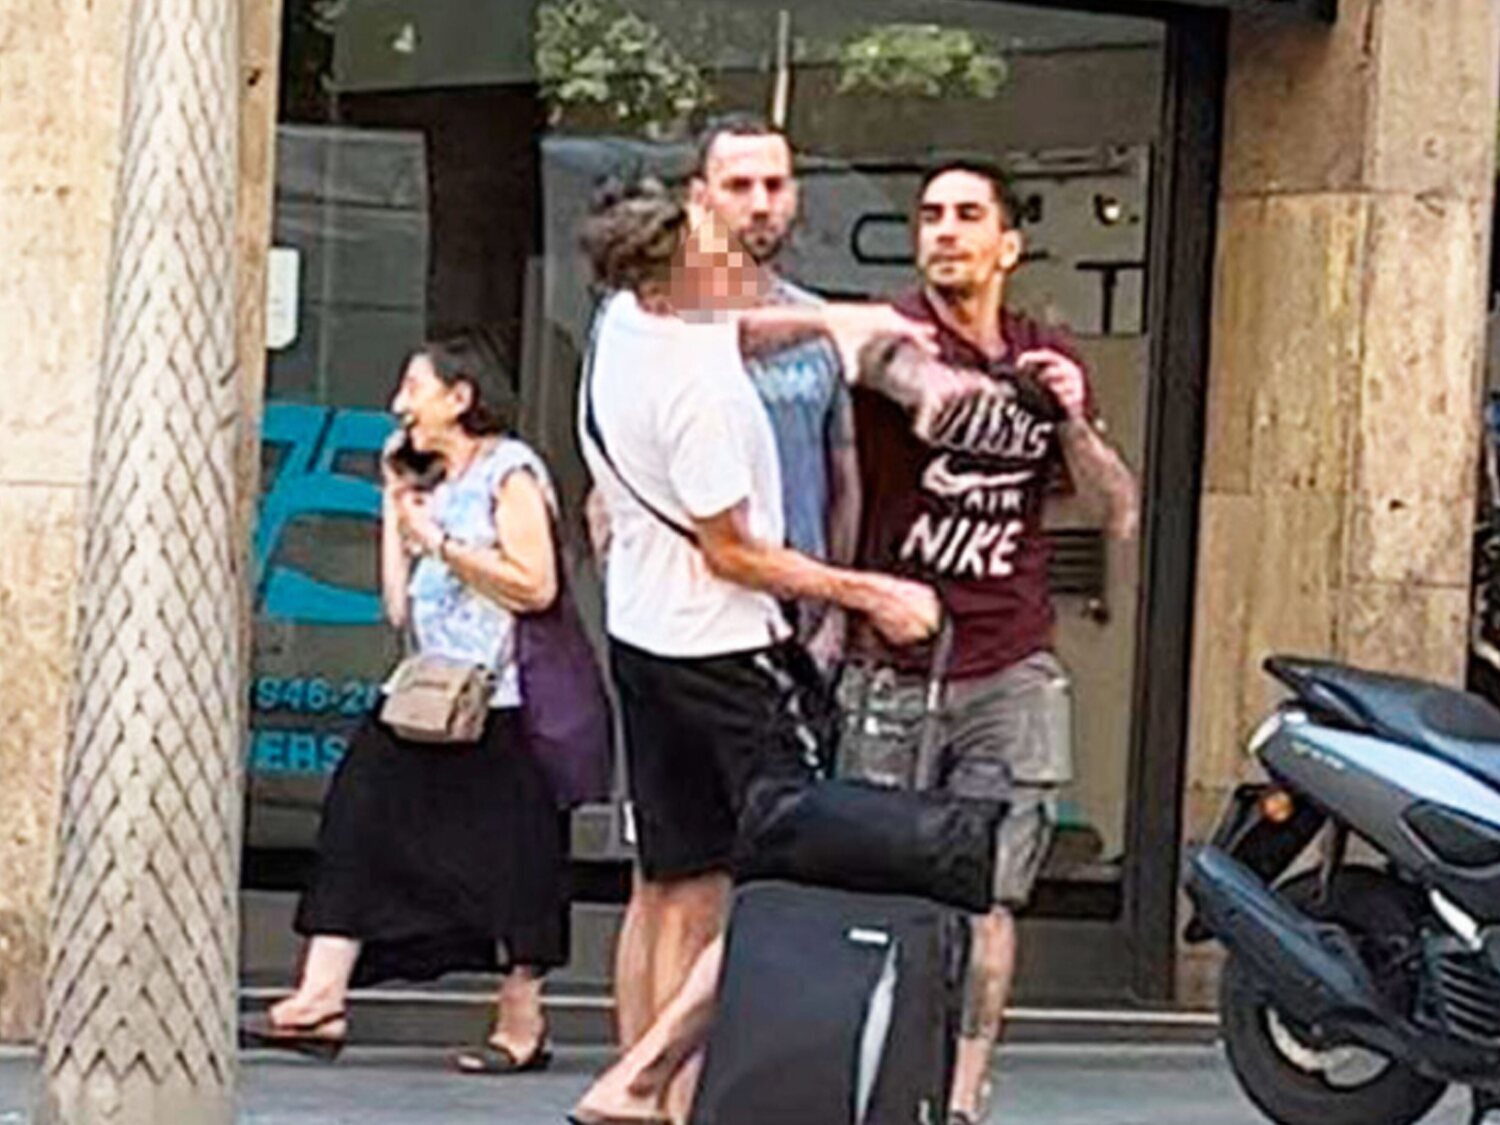 Denuncian una agresión homófoba en Barcelona a plena luz del día: "Maricón, vete de aquí"